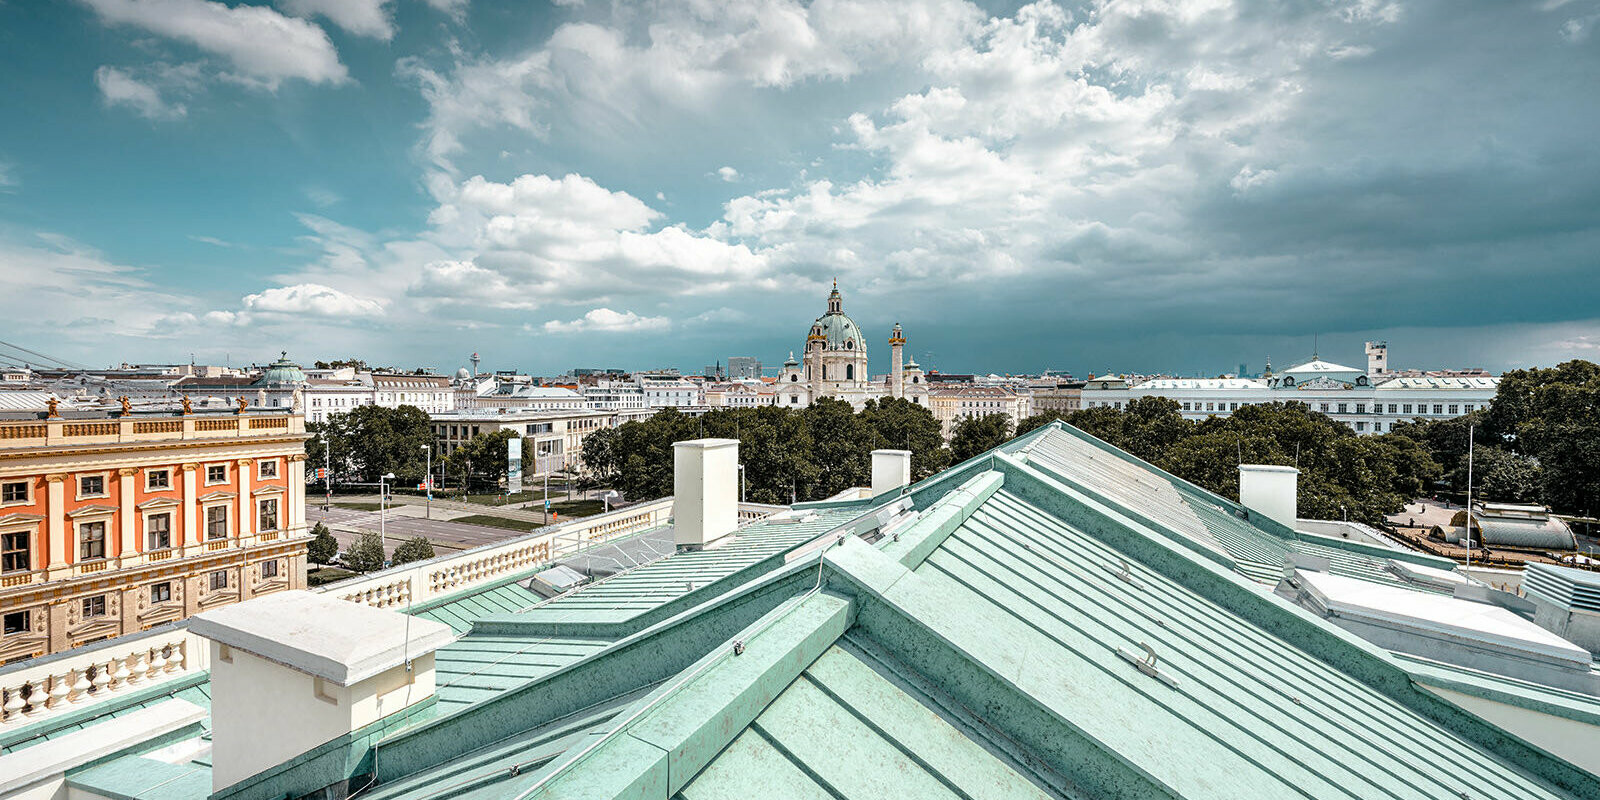 Blick über das Dach des Künstlerhaus Wien am Wiener Karlsplatz.